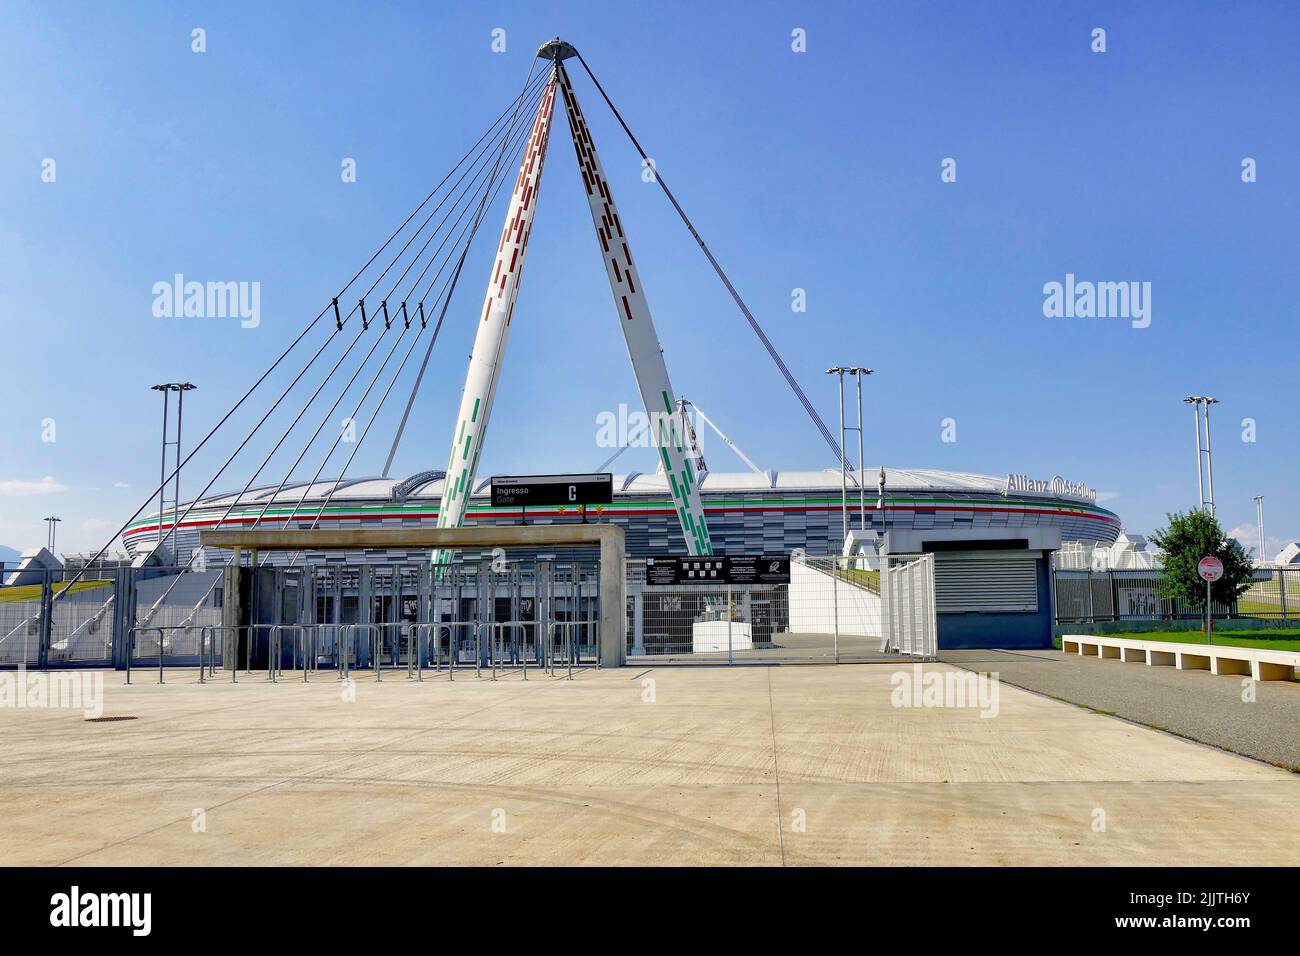 A beautiful shot of the Juventus football stadium Stock Photo